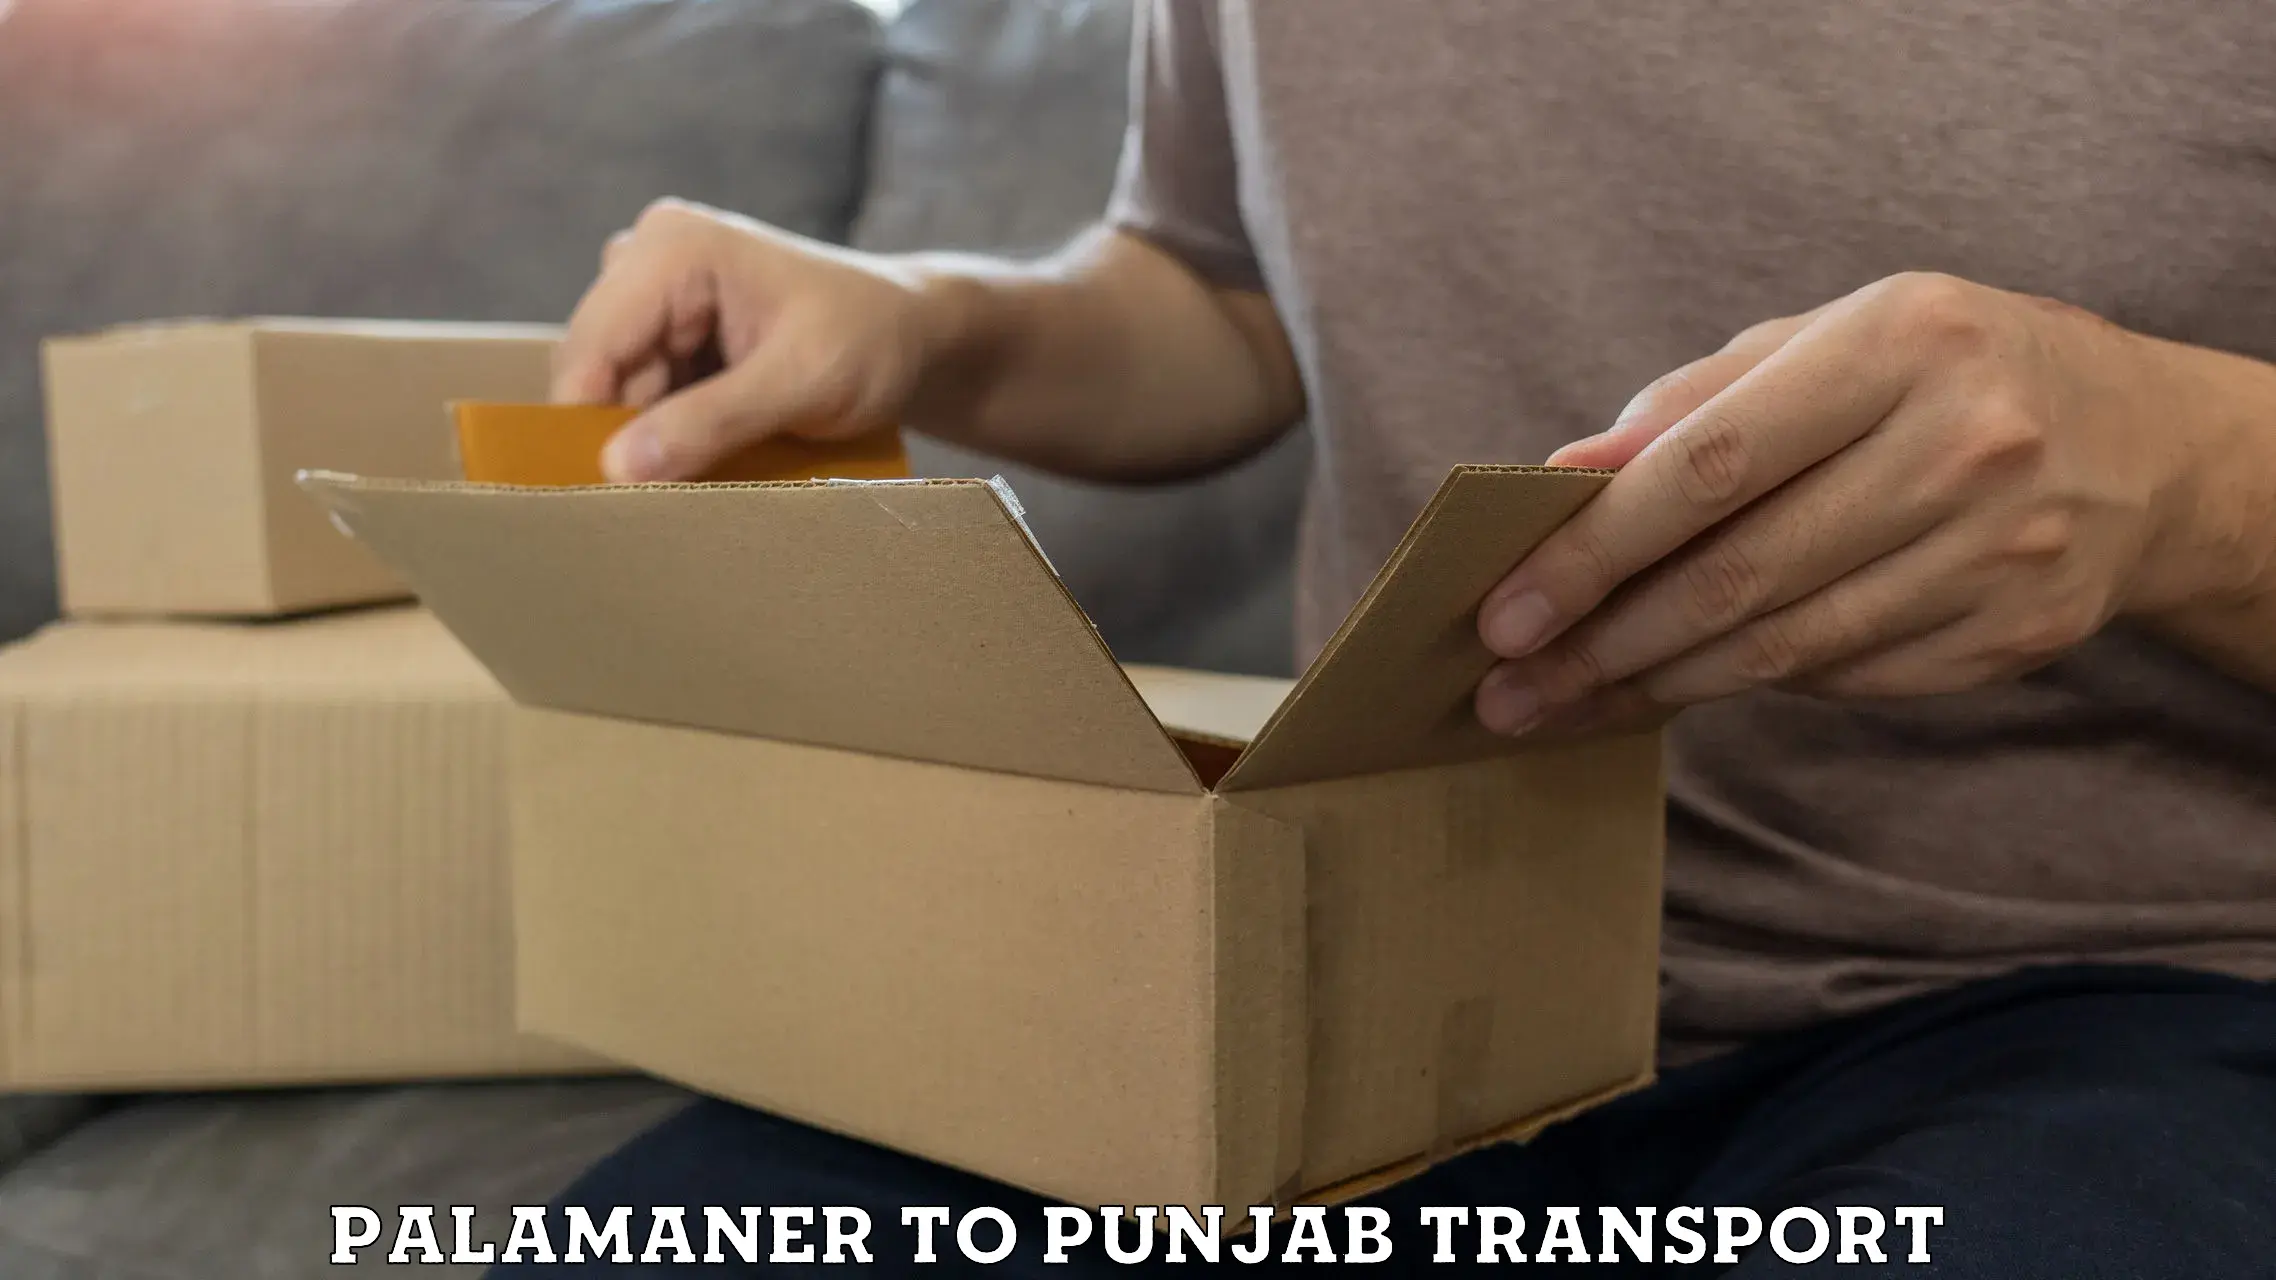 Furniture transport service in Palamaner to Punjab